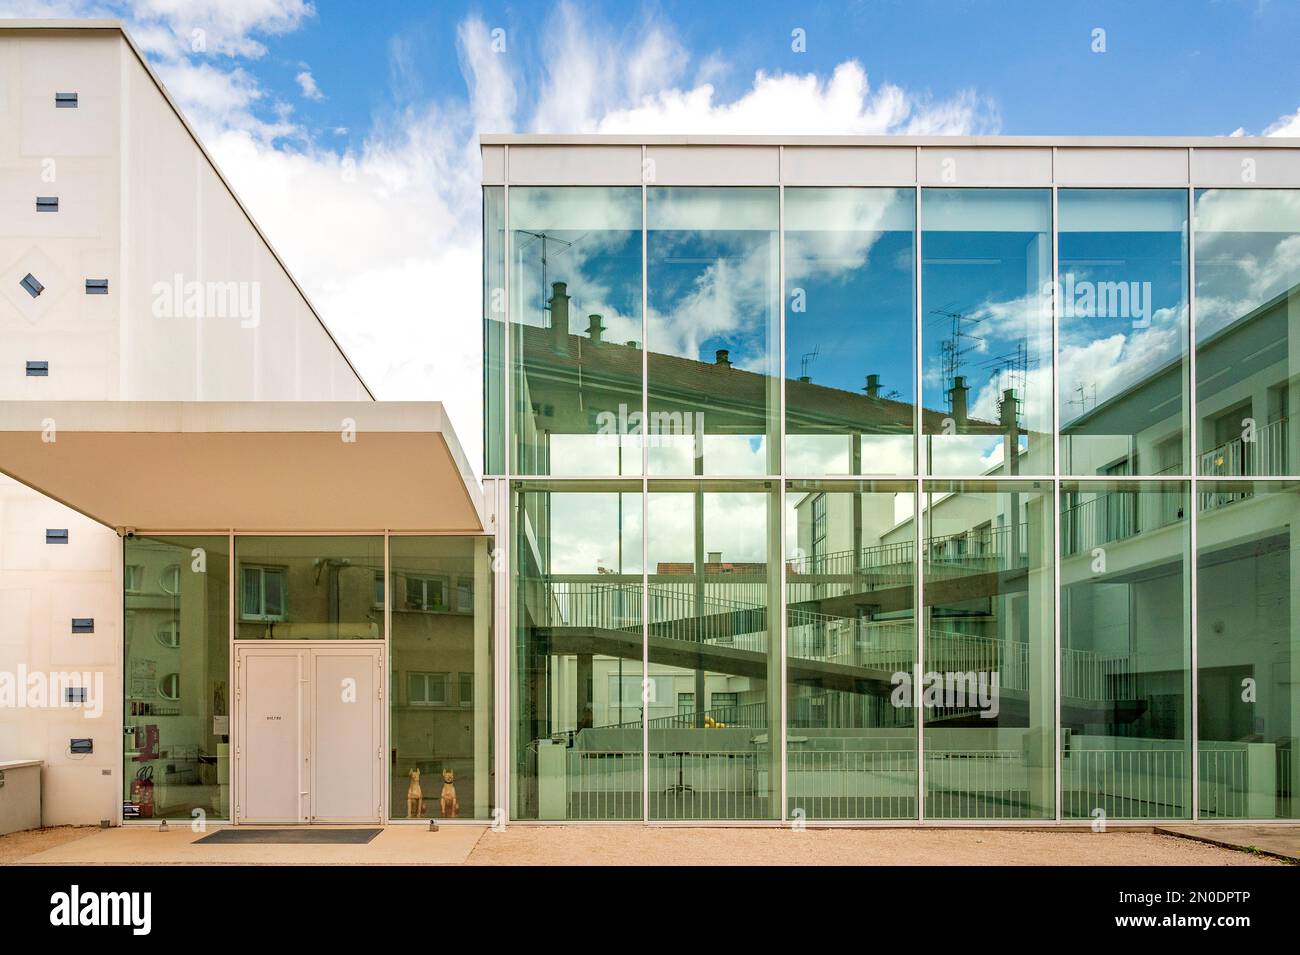 Le Consortium, le centre de l'art contemporain de Dijon, France Banque D'Images